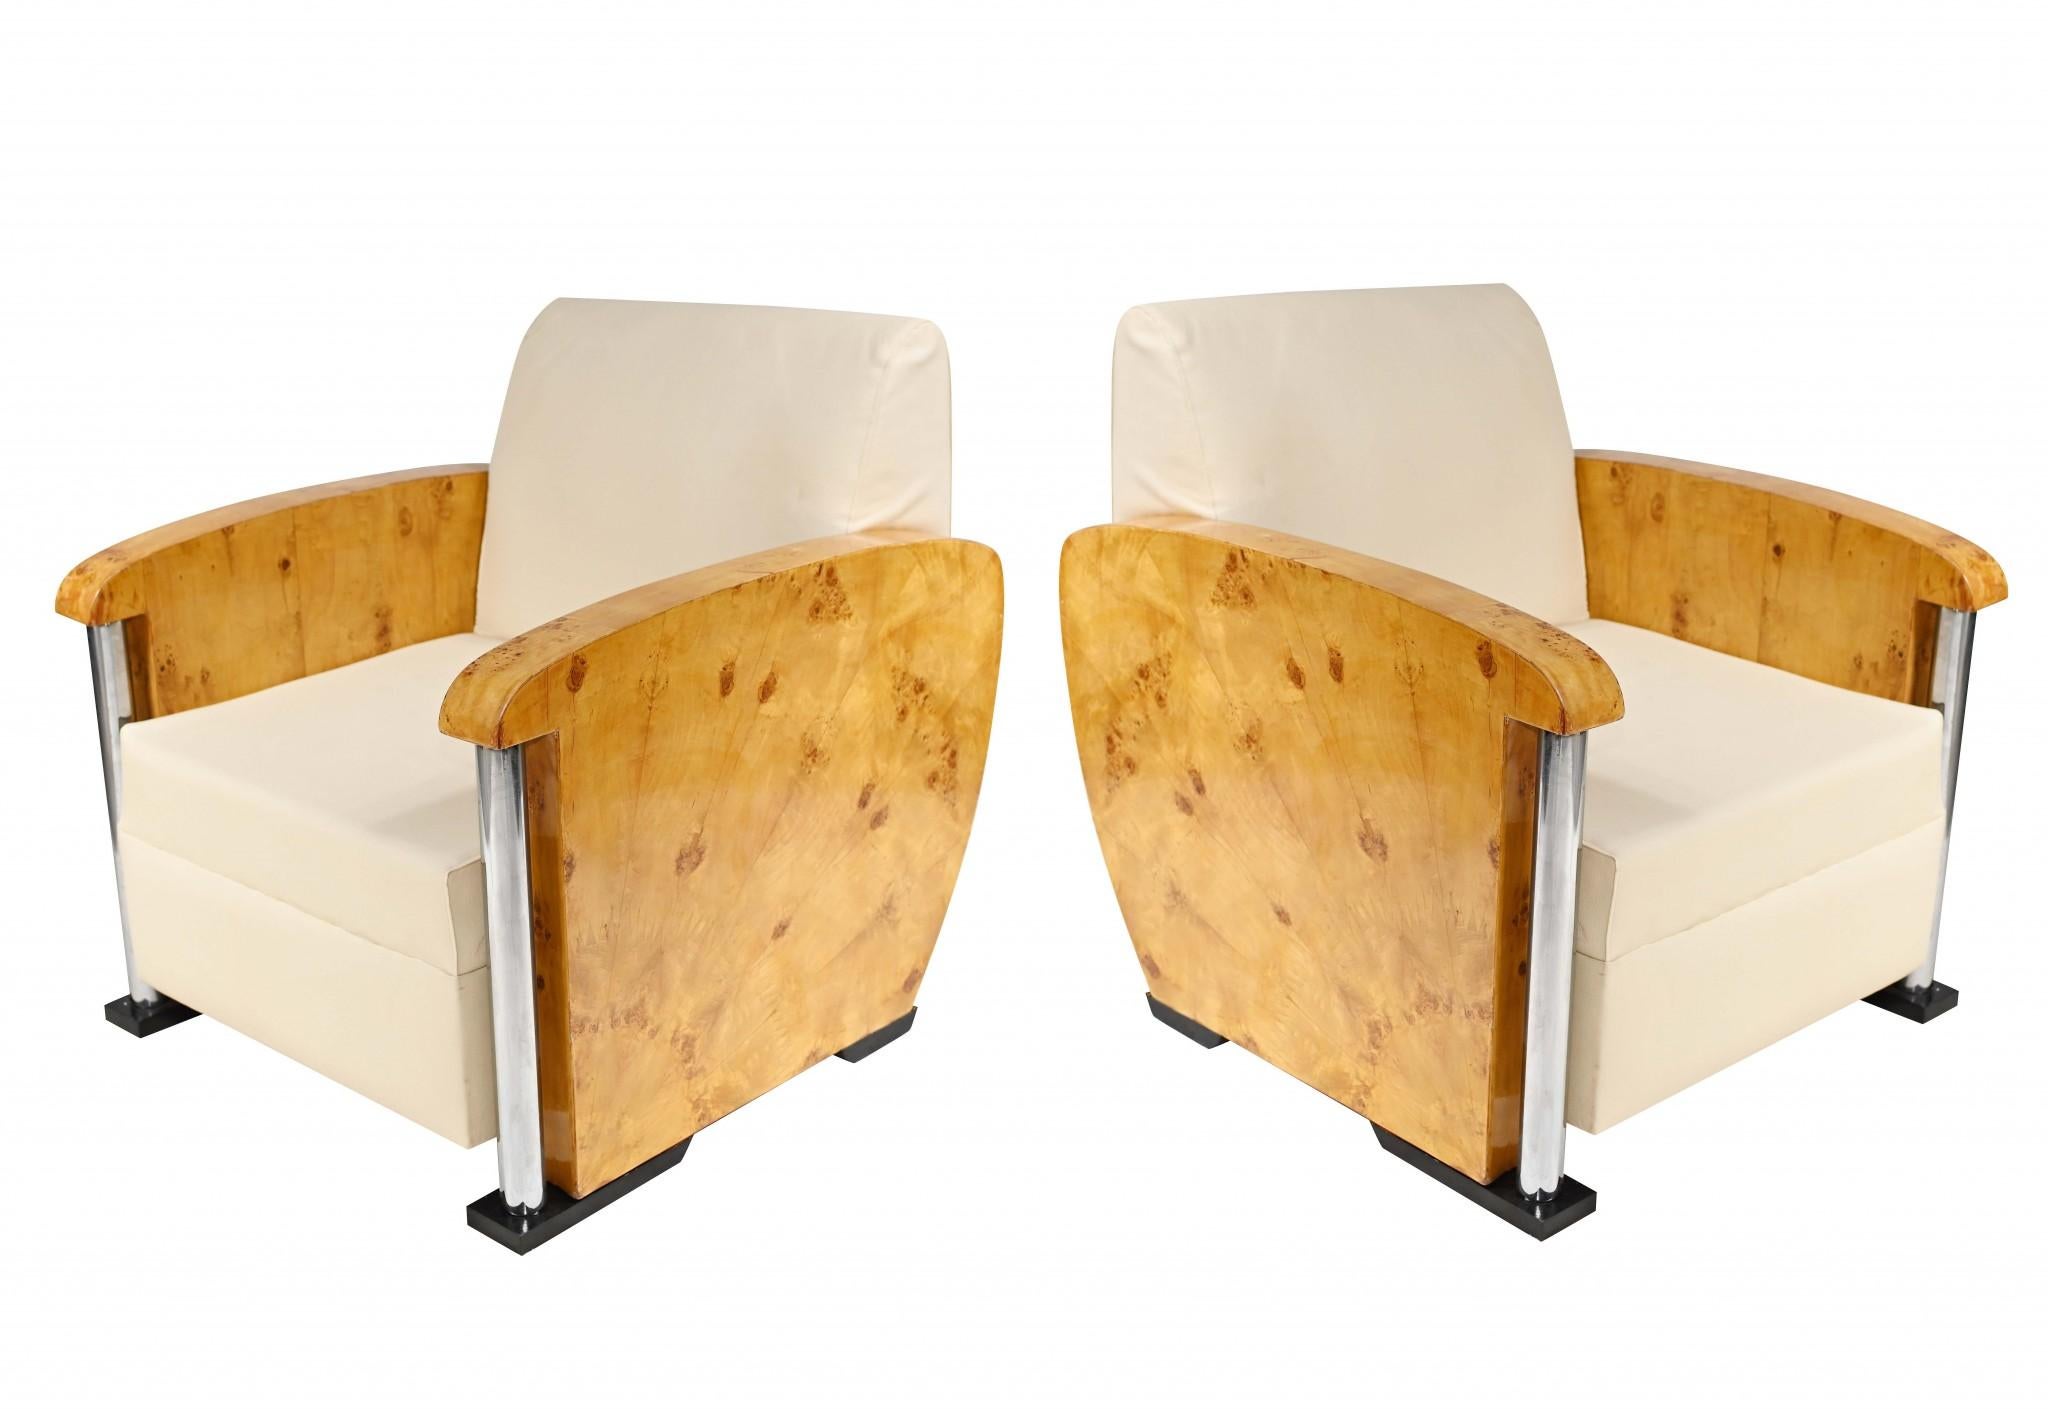 Superbe paire de fauteuils club de style art déco avec un design unique en forme de boîte.
Le look déco minimal classique incarne en quelque sorte l'esthétique des années 1920.
Parfait pour les intérieurs contemporains et confortable pour